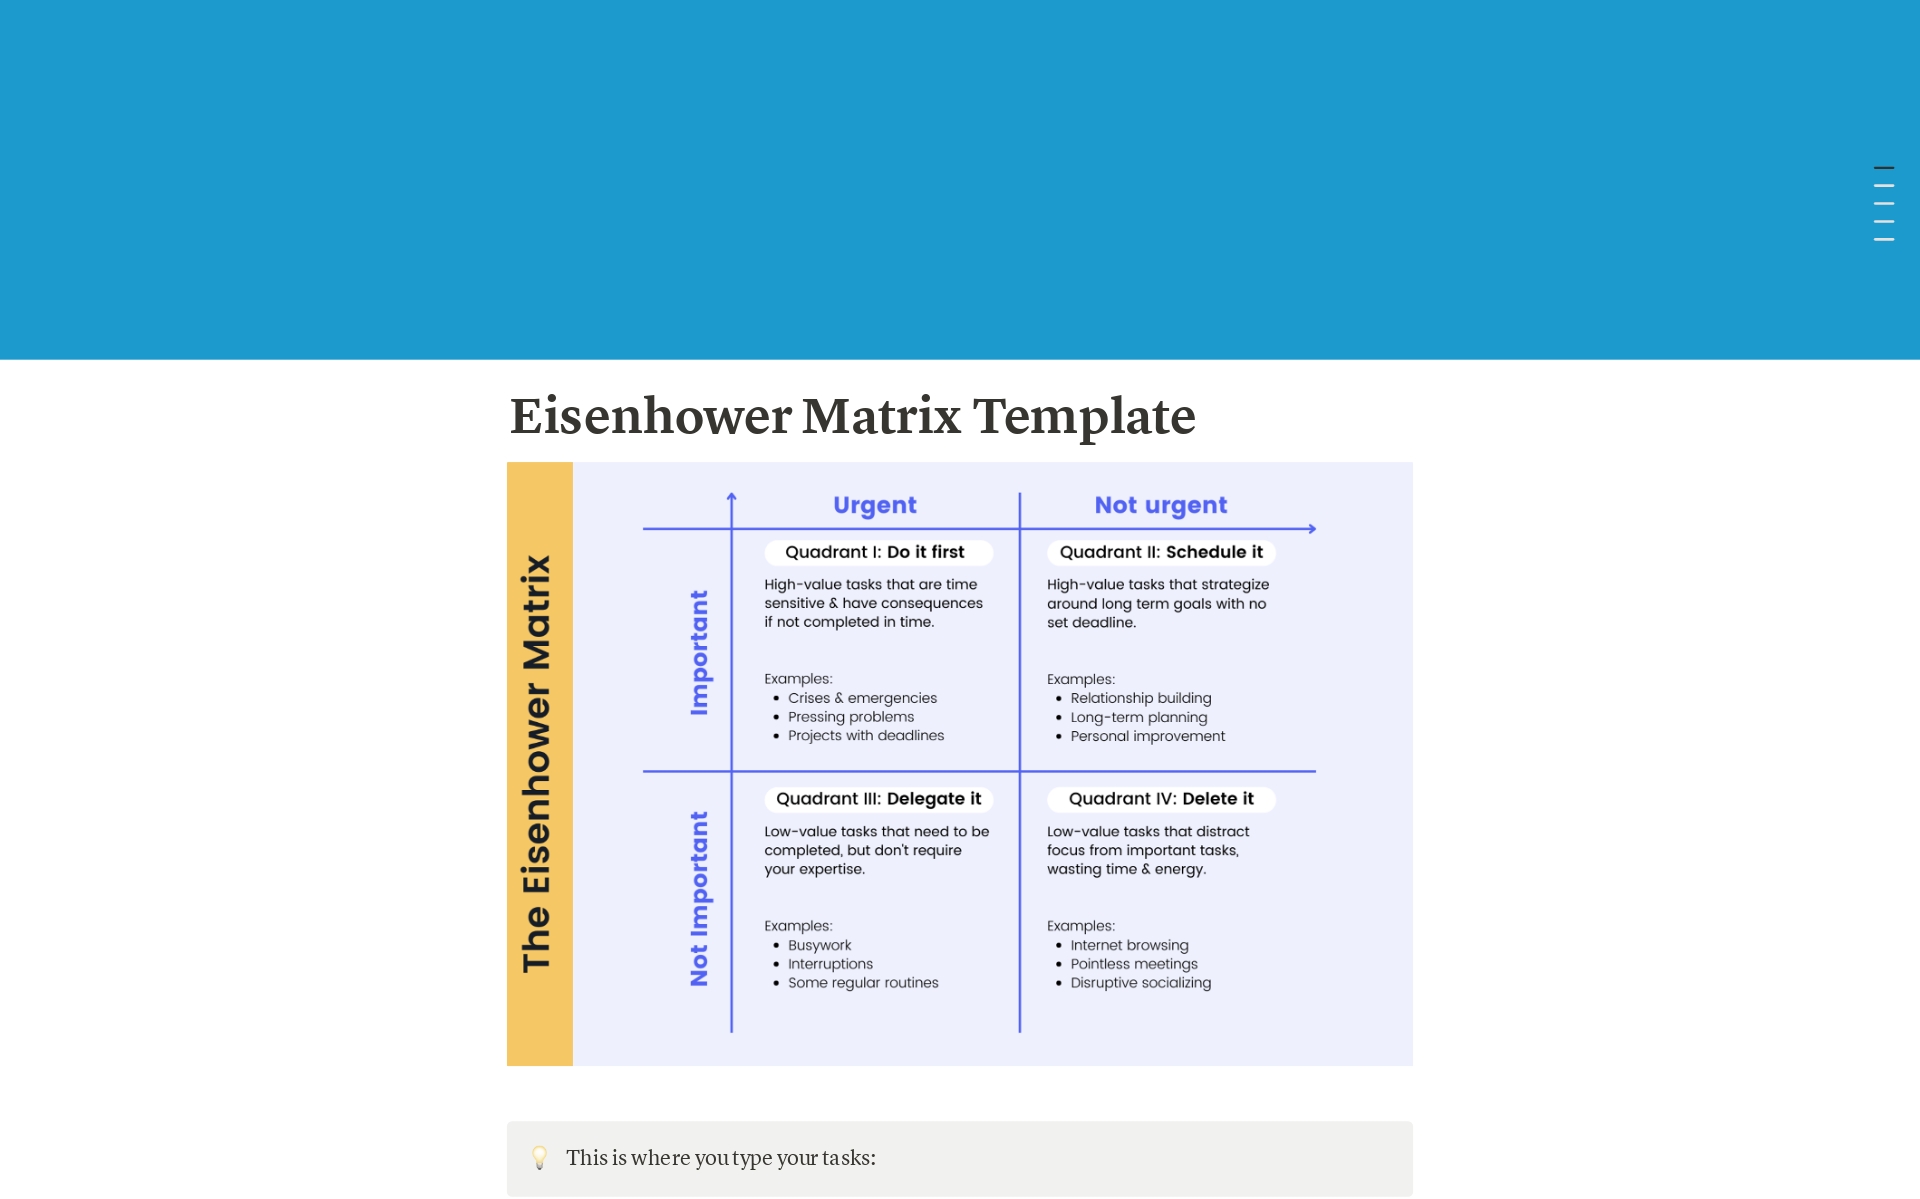 Vista previa de una plantilla para Eisenhower Matrix